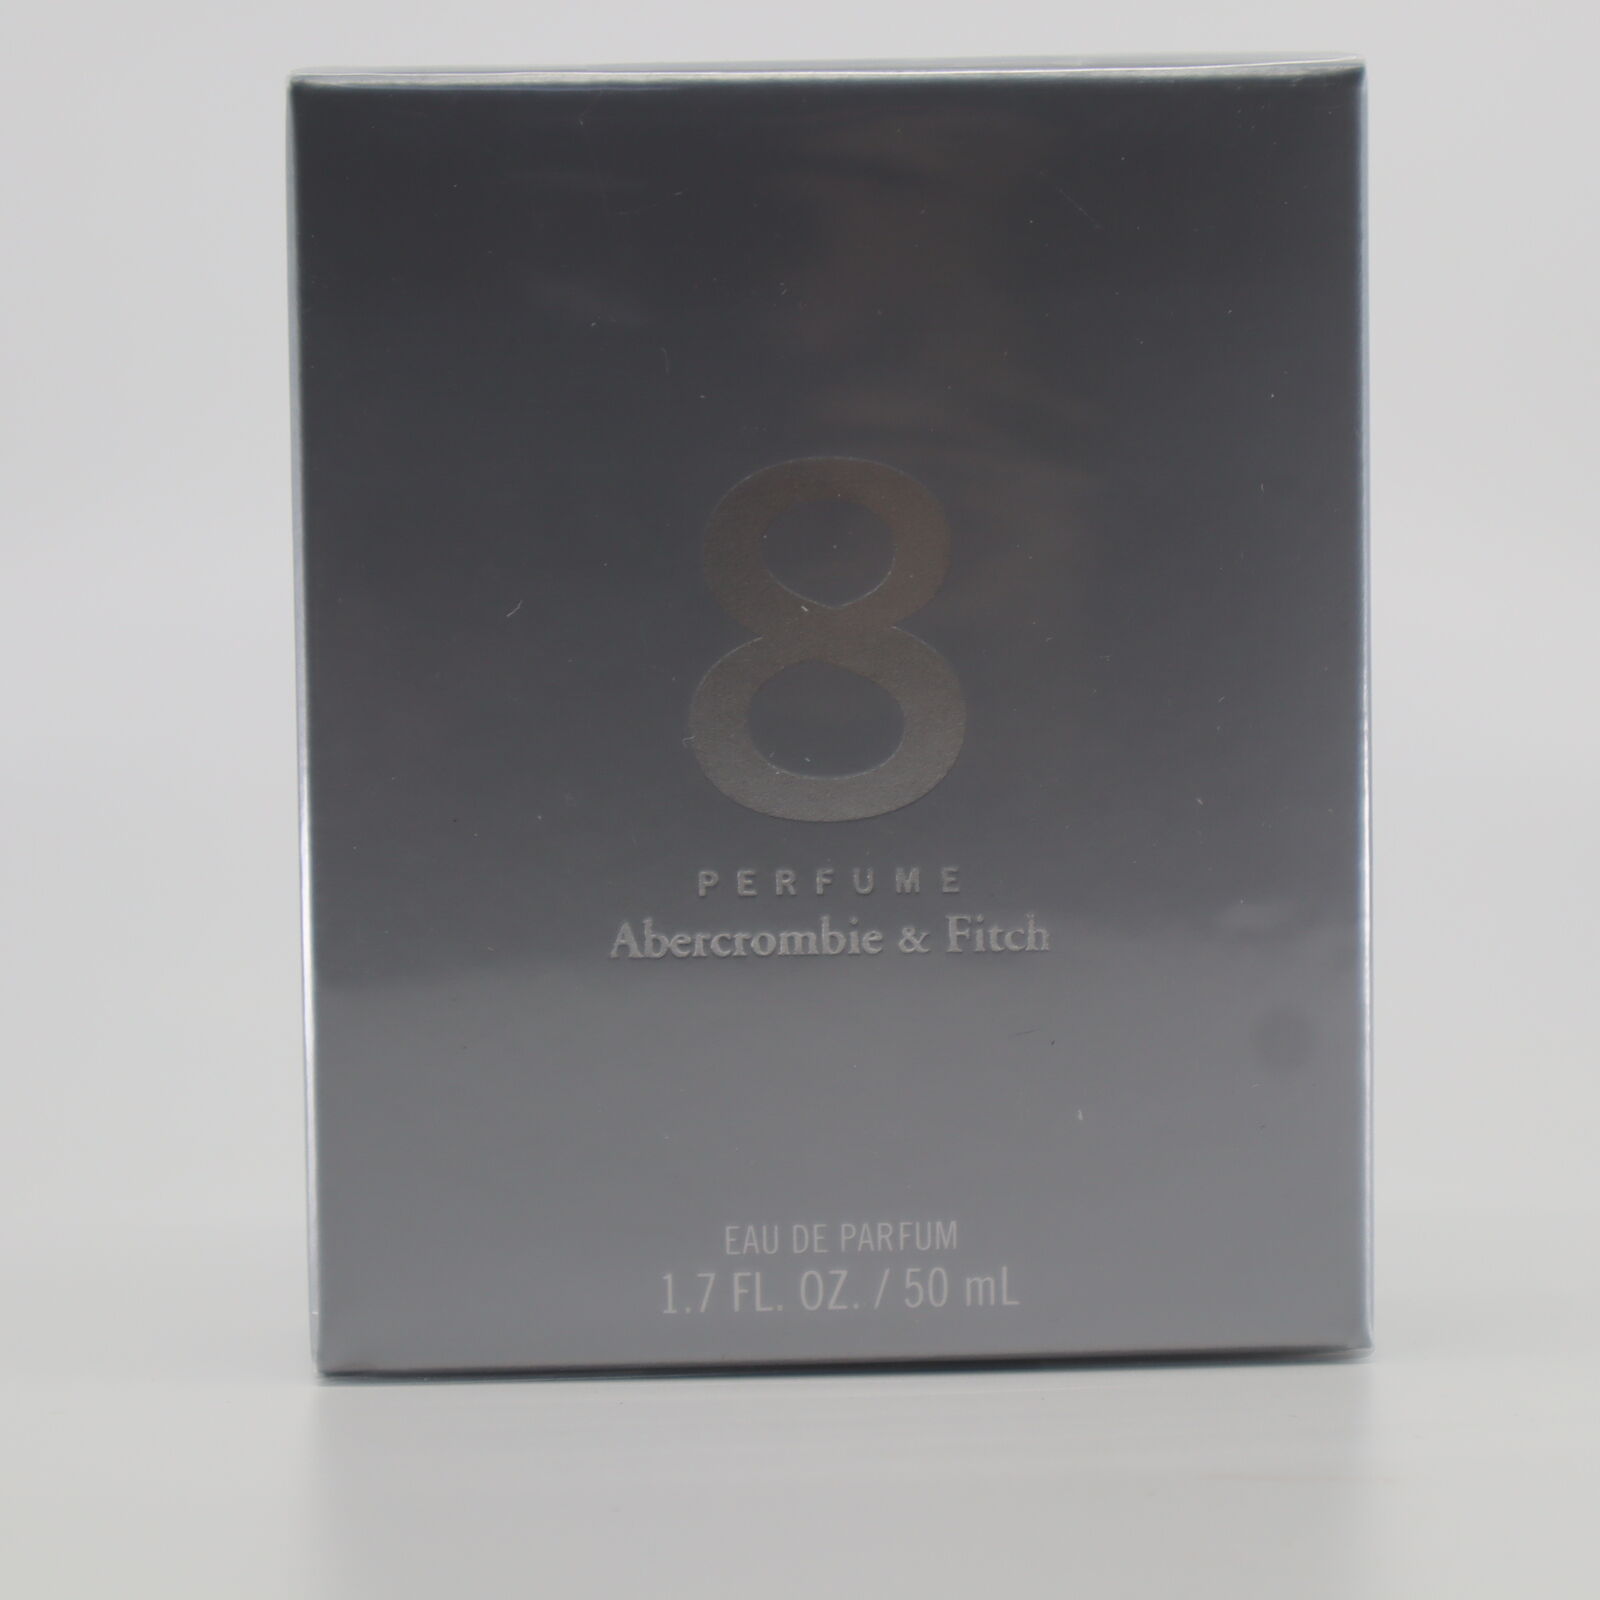 Abercrombie & Fitch 8 Eau de Parfum 1.7 fl oz Spray for Women – NEW